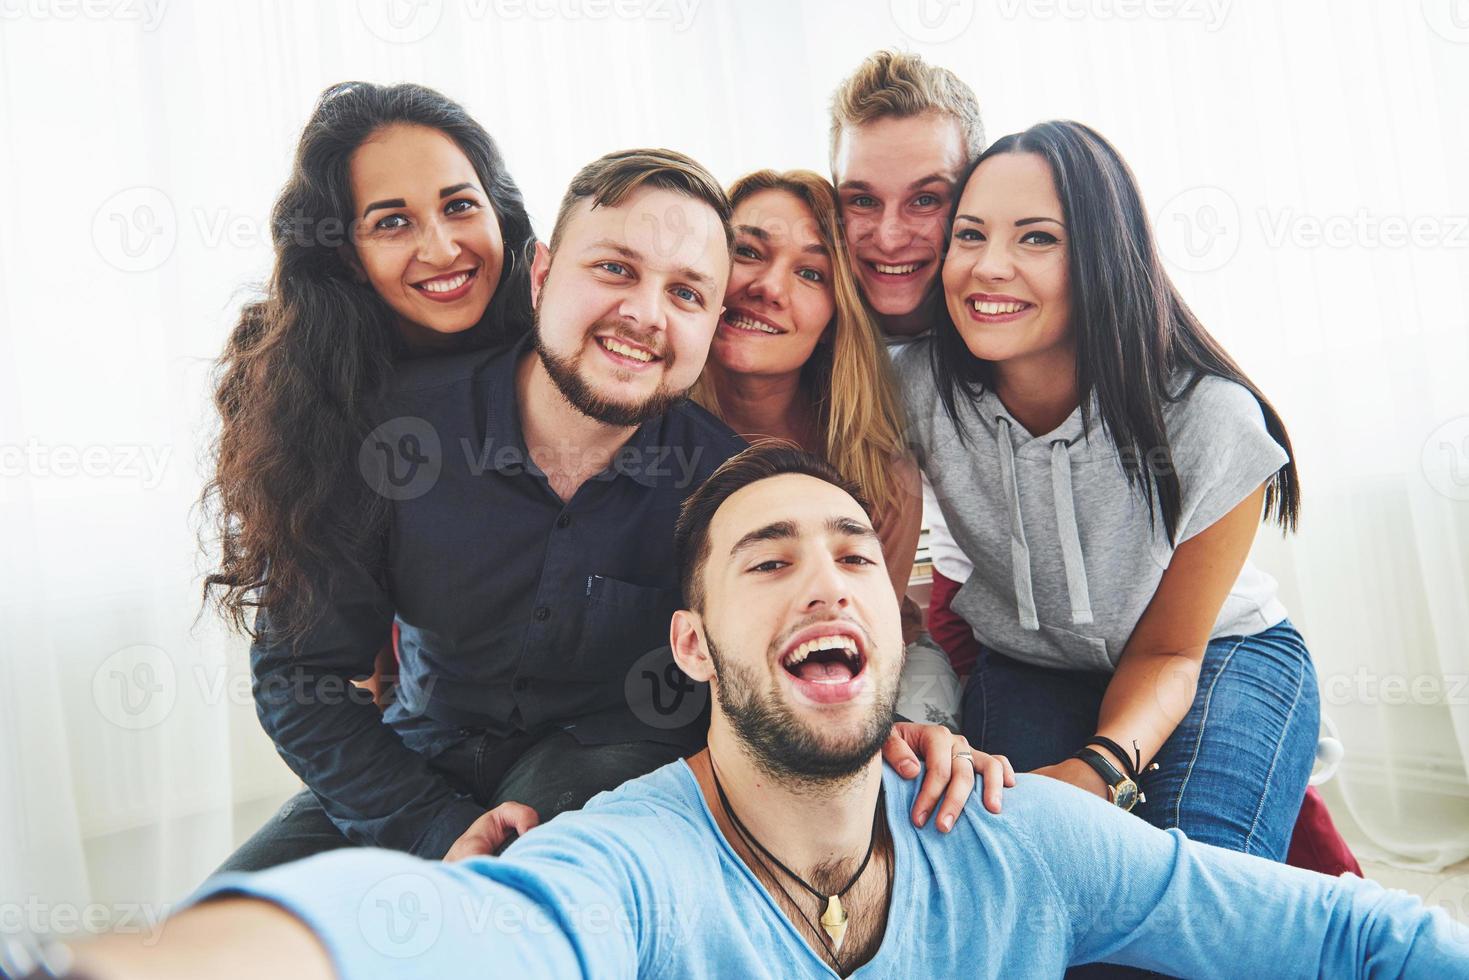 beste freunde, die selfie im freien mit hintergrundbeleuchtung machen - fröhliches freundschaftskonzept mit jungen leuten, die zusammen spaß haben foto